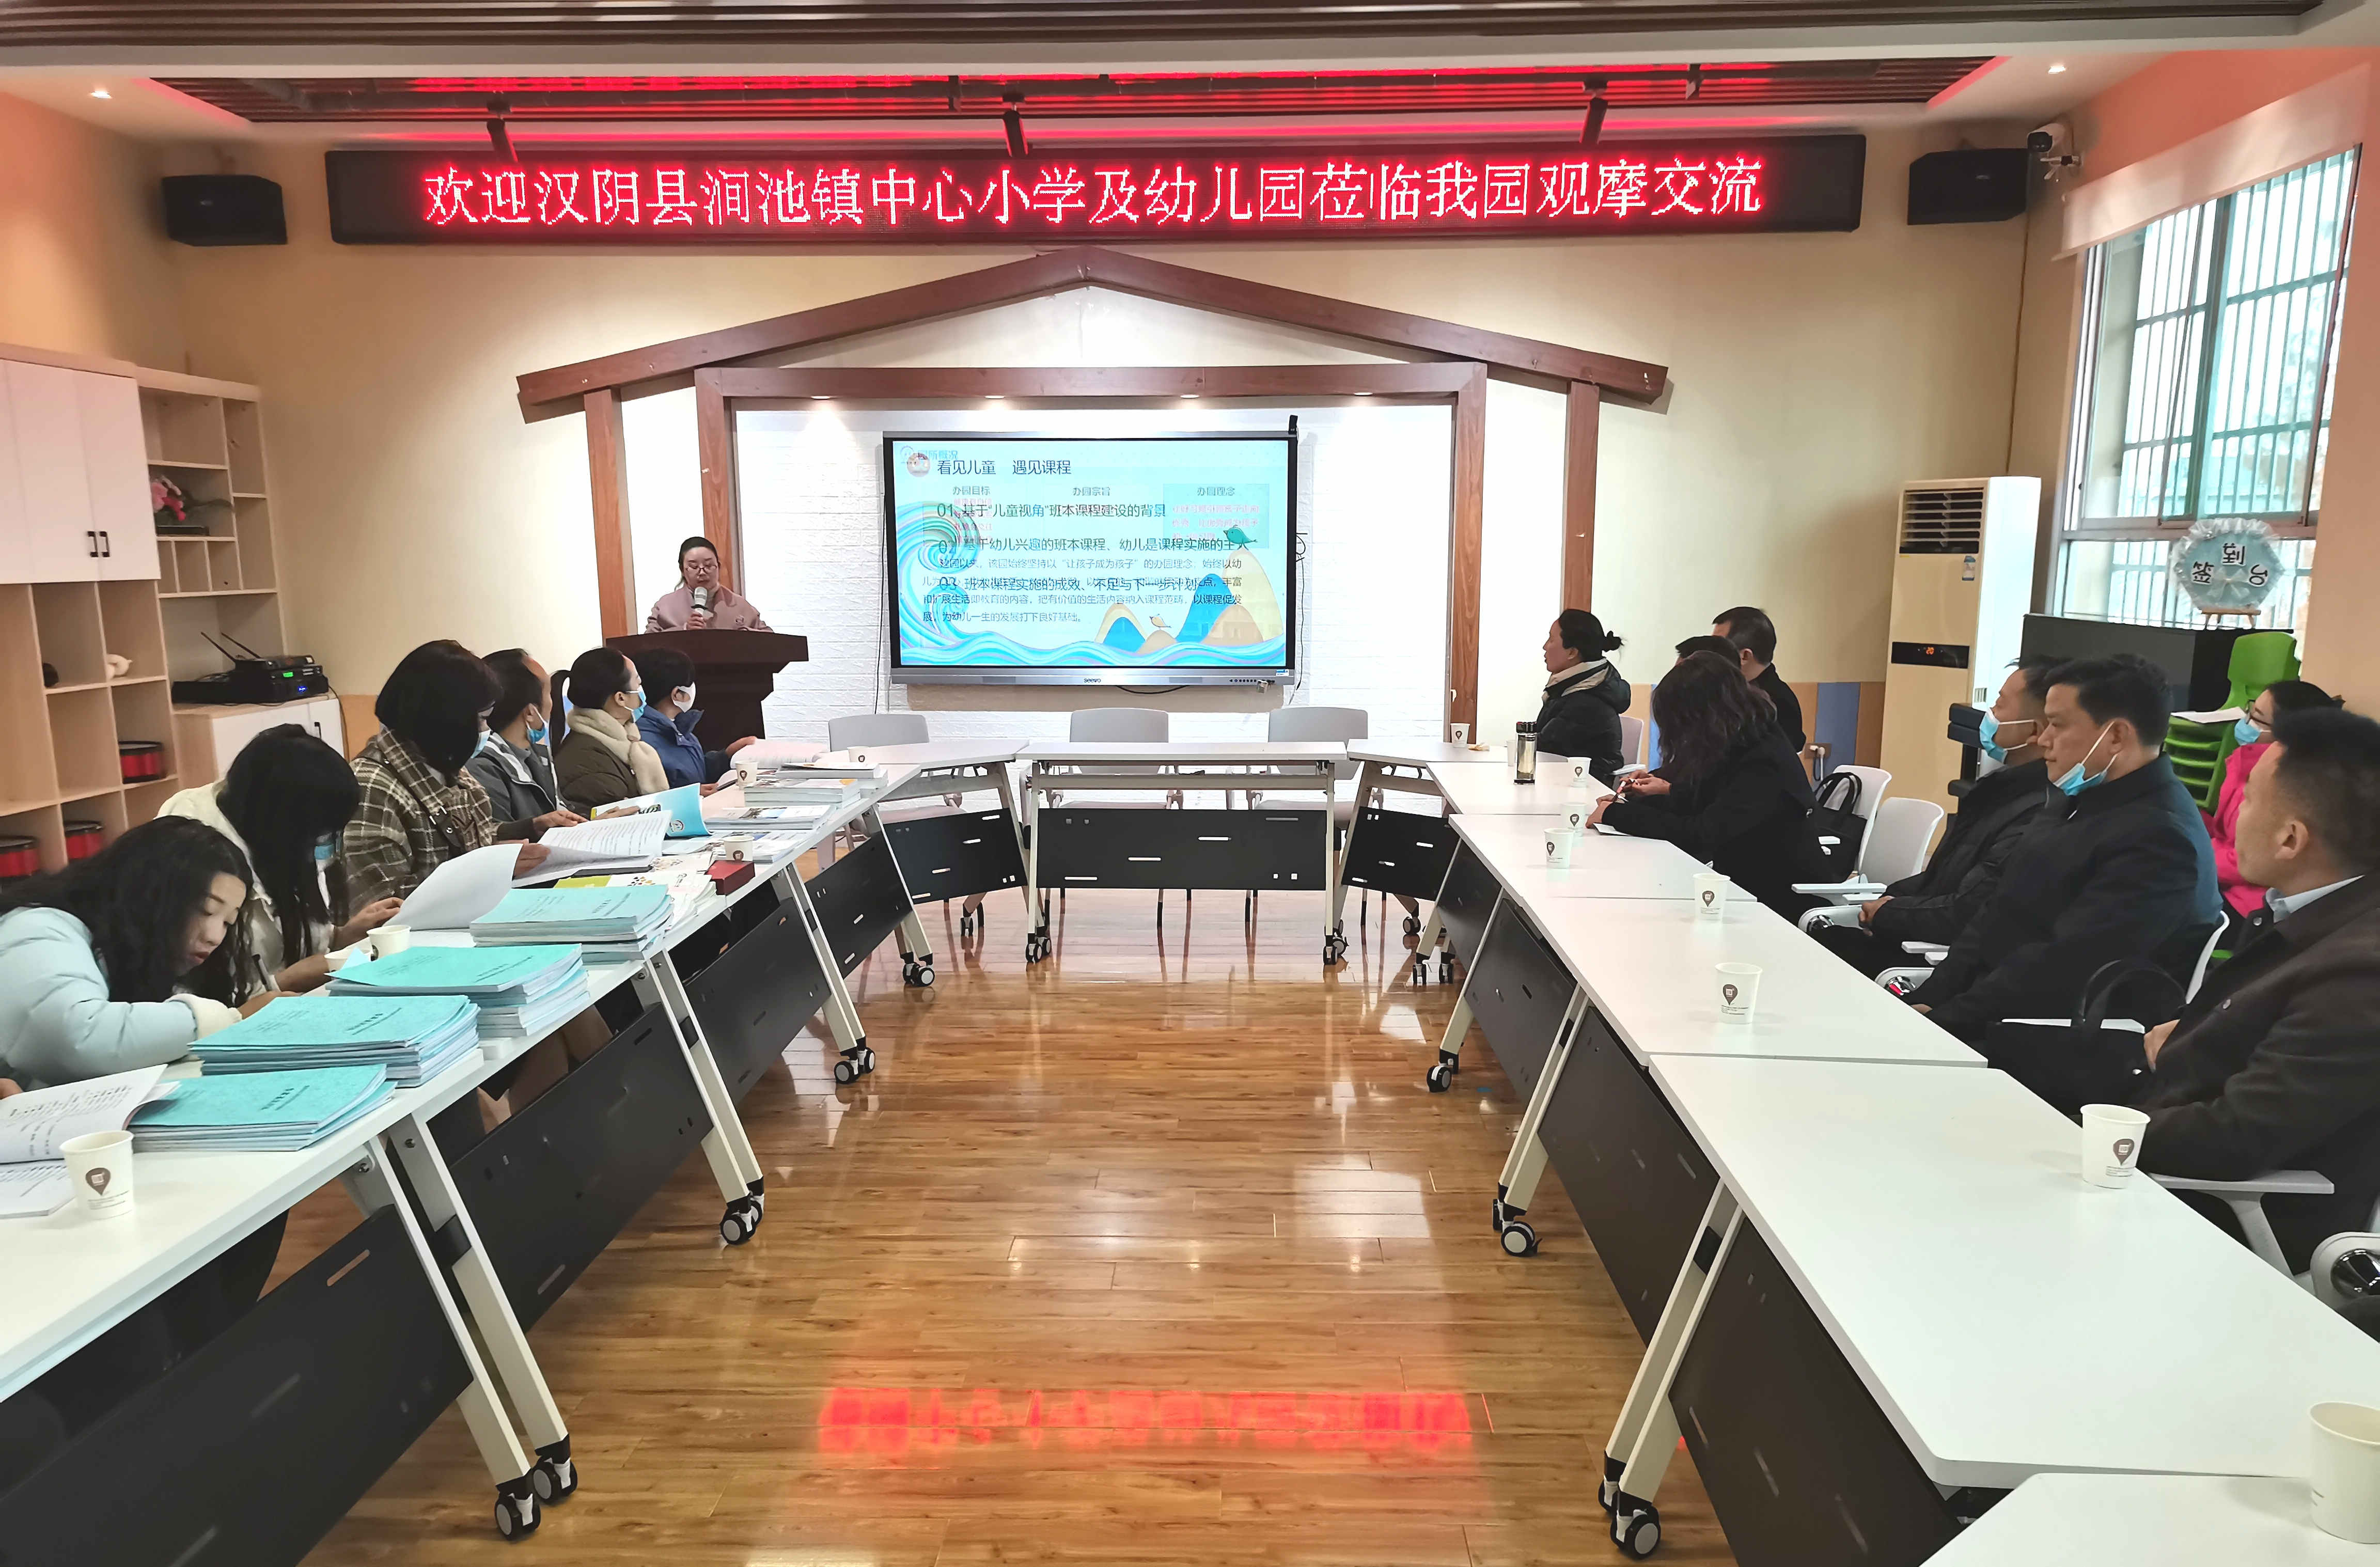 汉阴县涧池镇中心小学开展城区幼儿园观摩活动